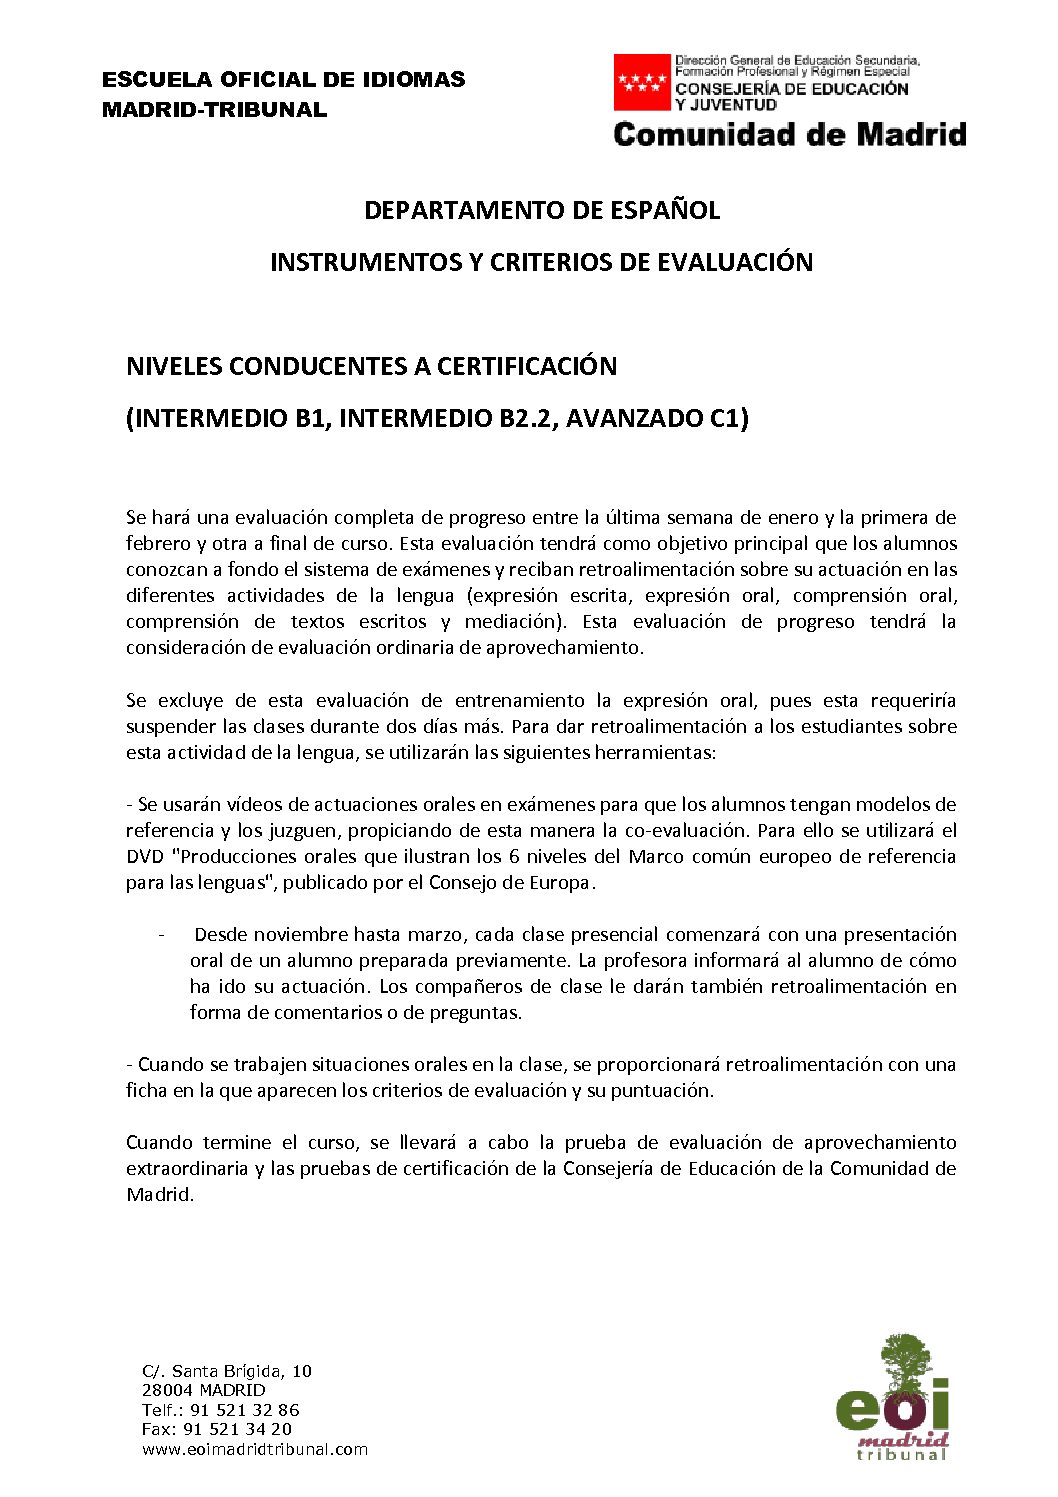 Criterios de evaluación – Español